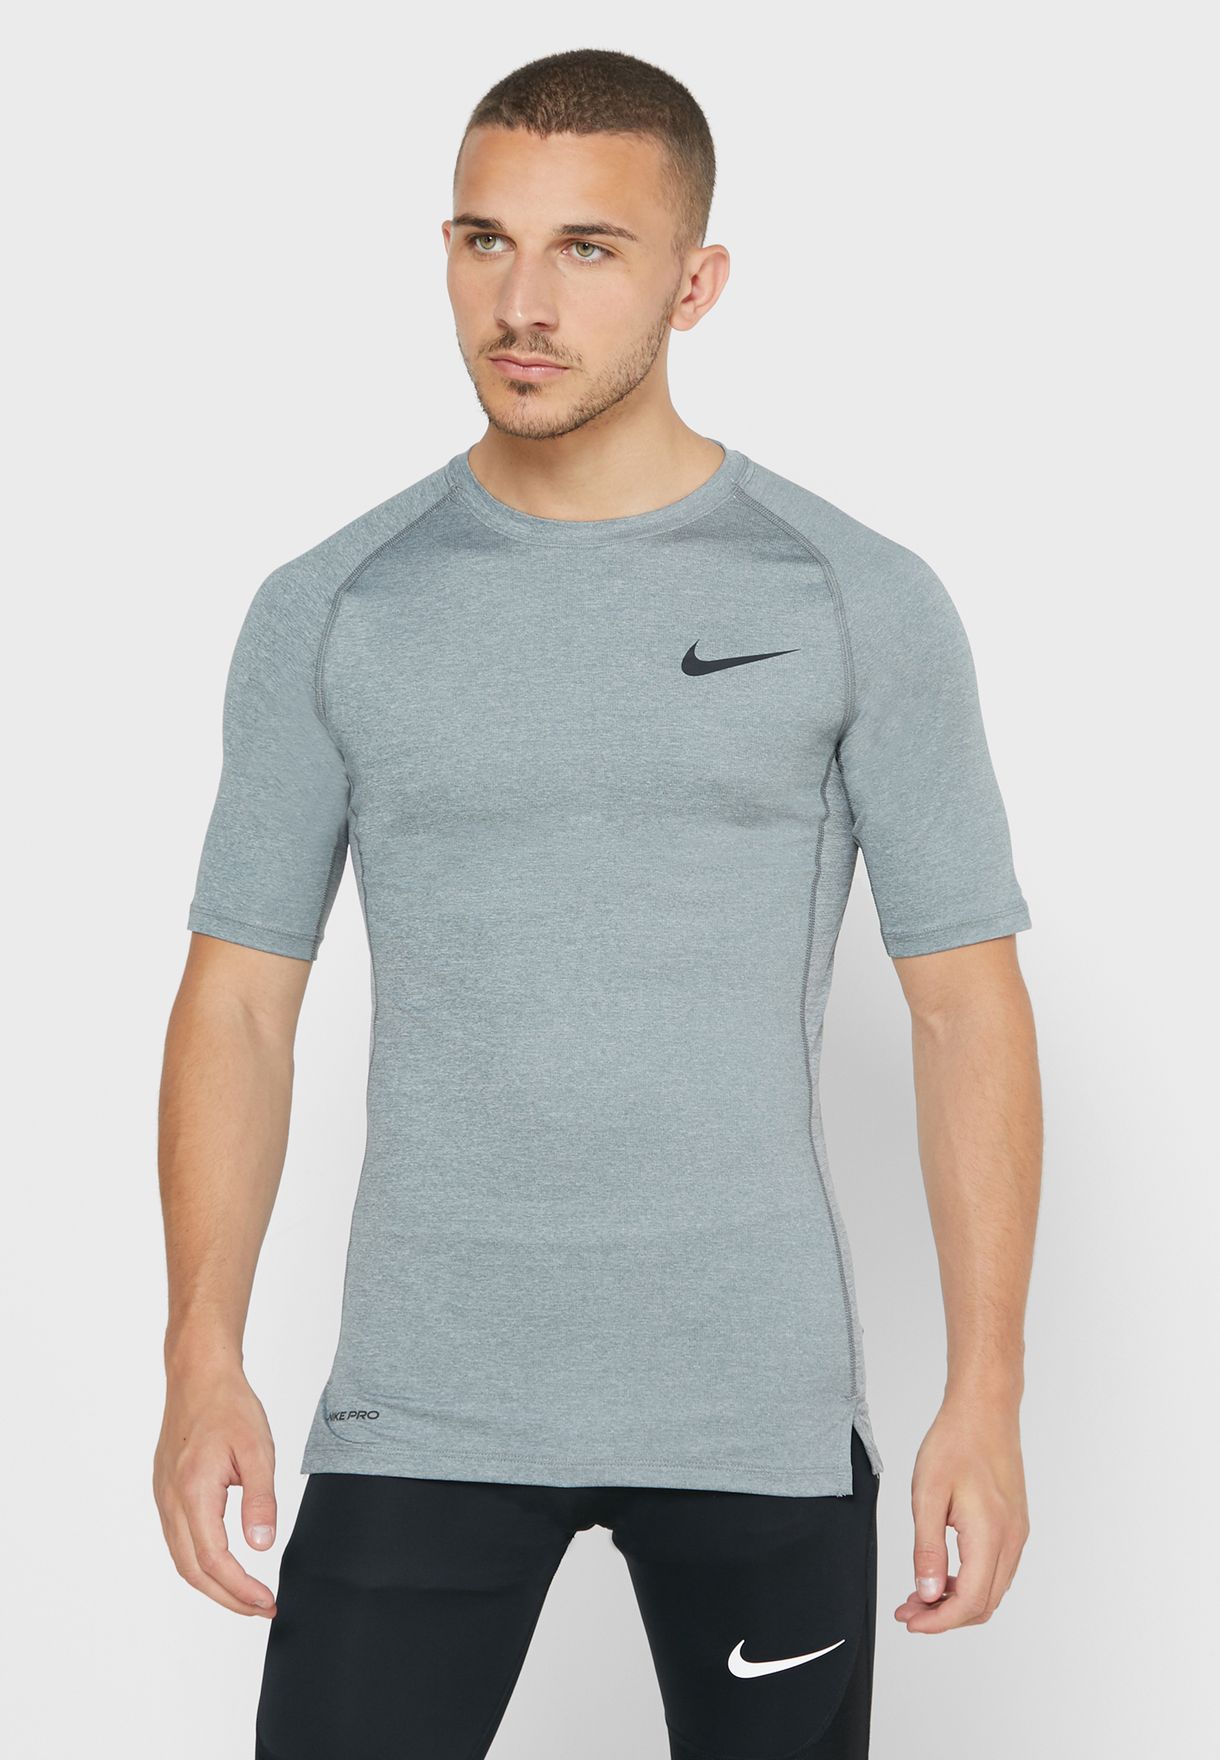 grey nike compression shirt